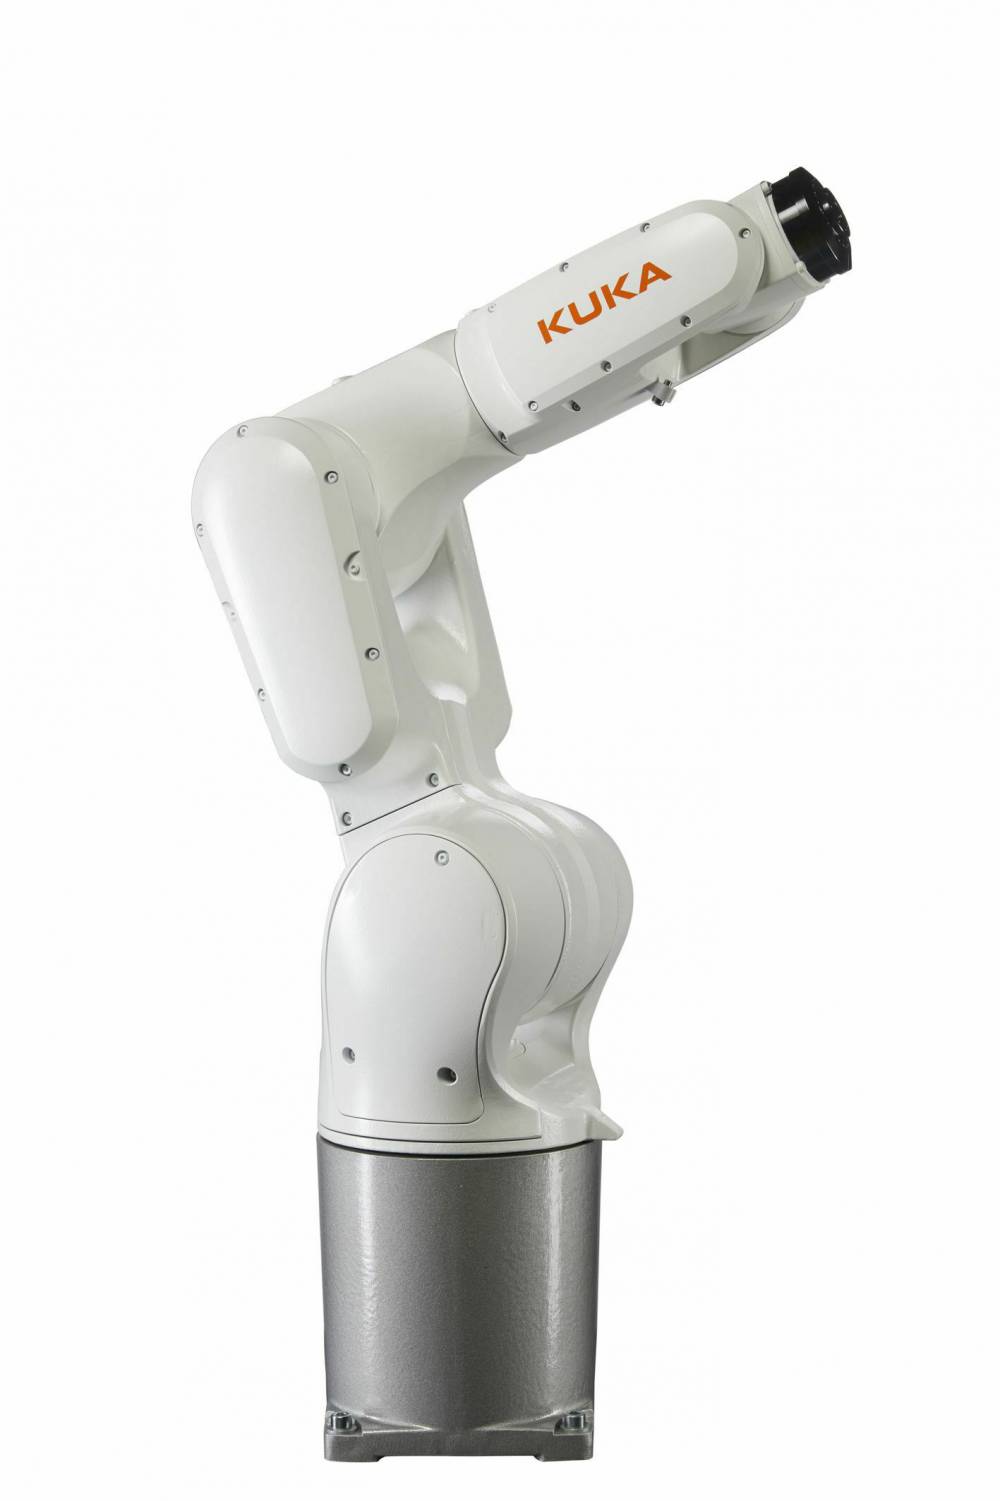 KUKA KR 6 R700 工业机器人 天津库卡机器人代理 天津kuka机器人代理